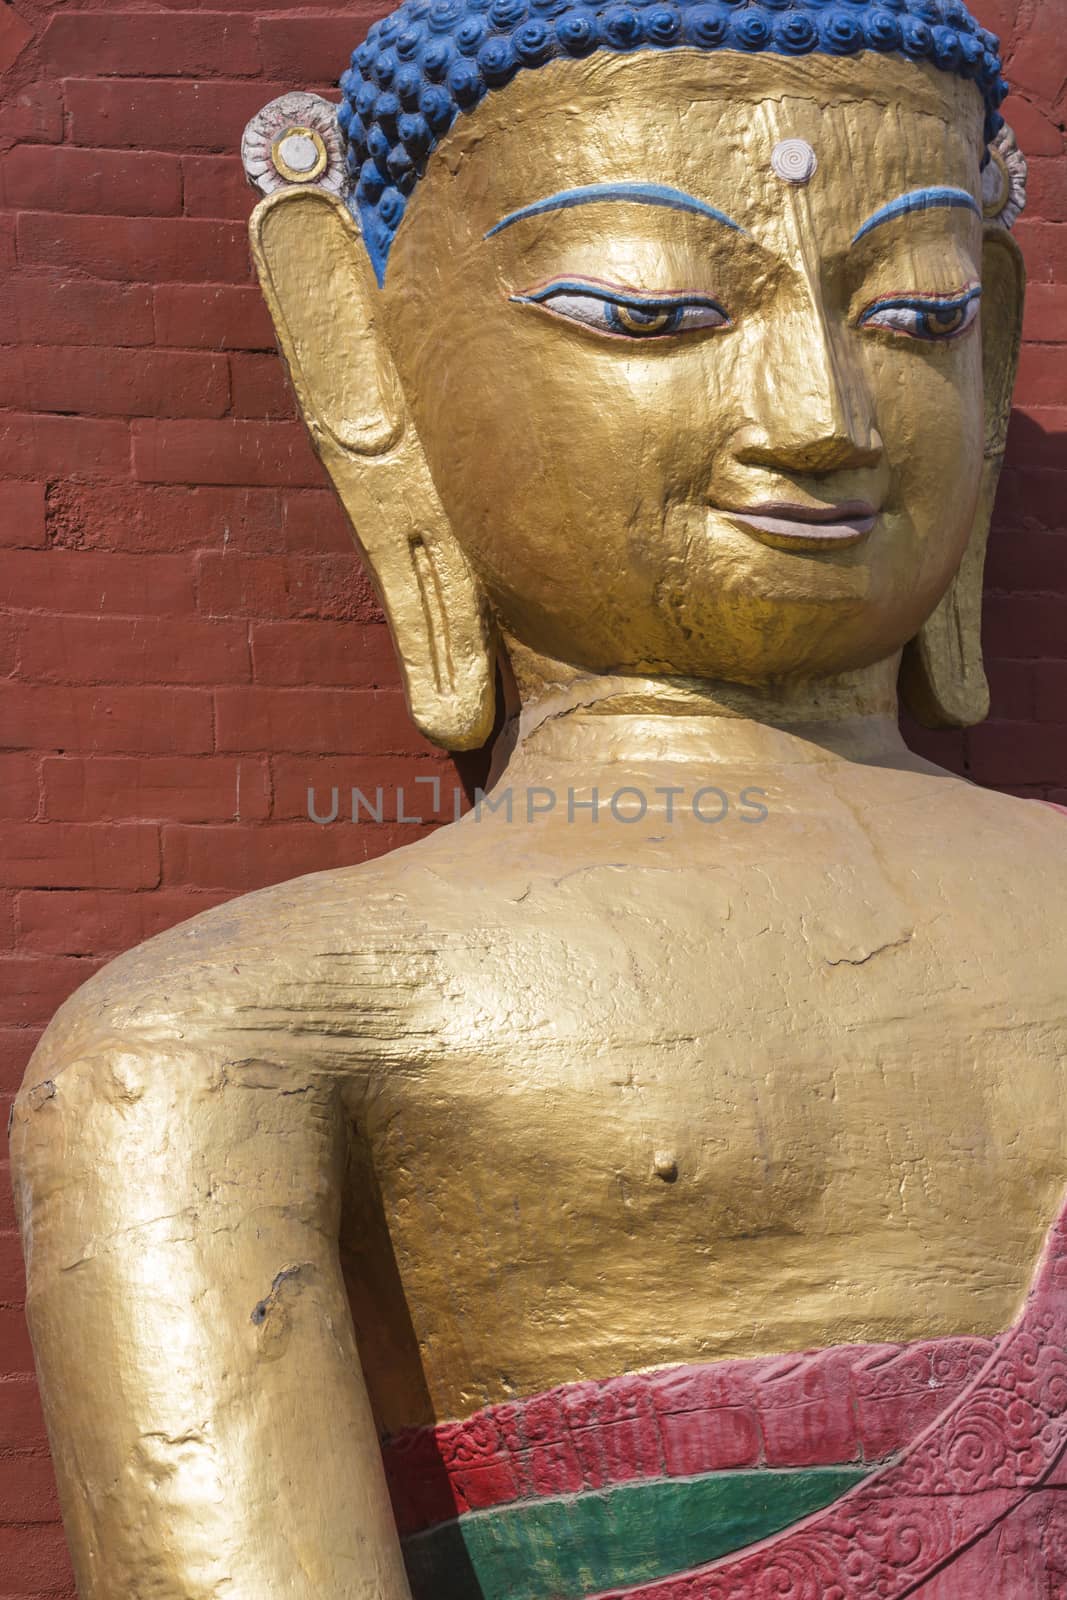 Buddha statue. Kathmandu, Nepal

